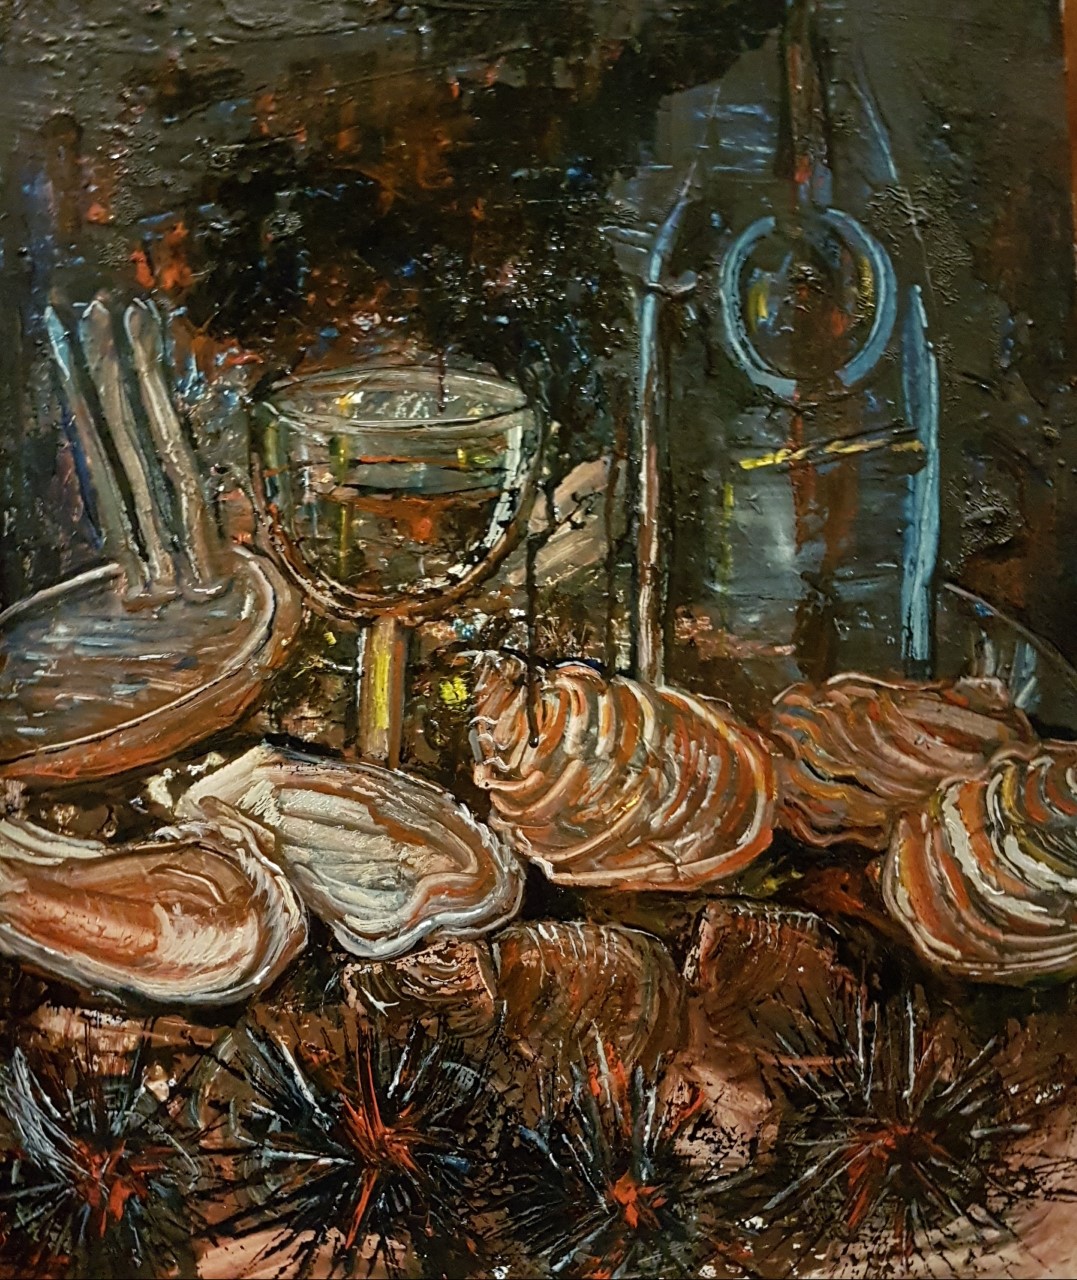 Peinture de l'artiste peintre Adèle liva, le titre de l'oeuvre est : Figues de Provence